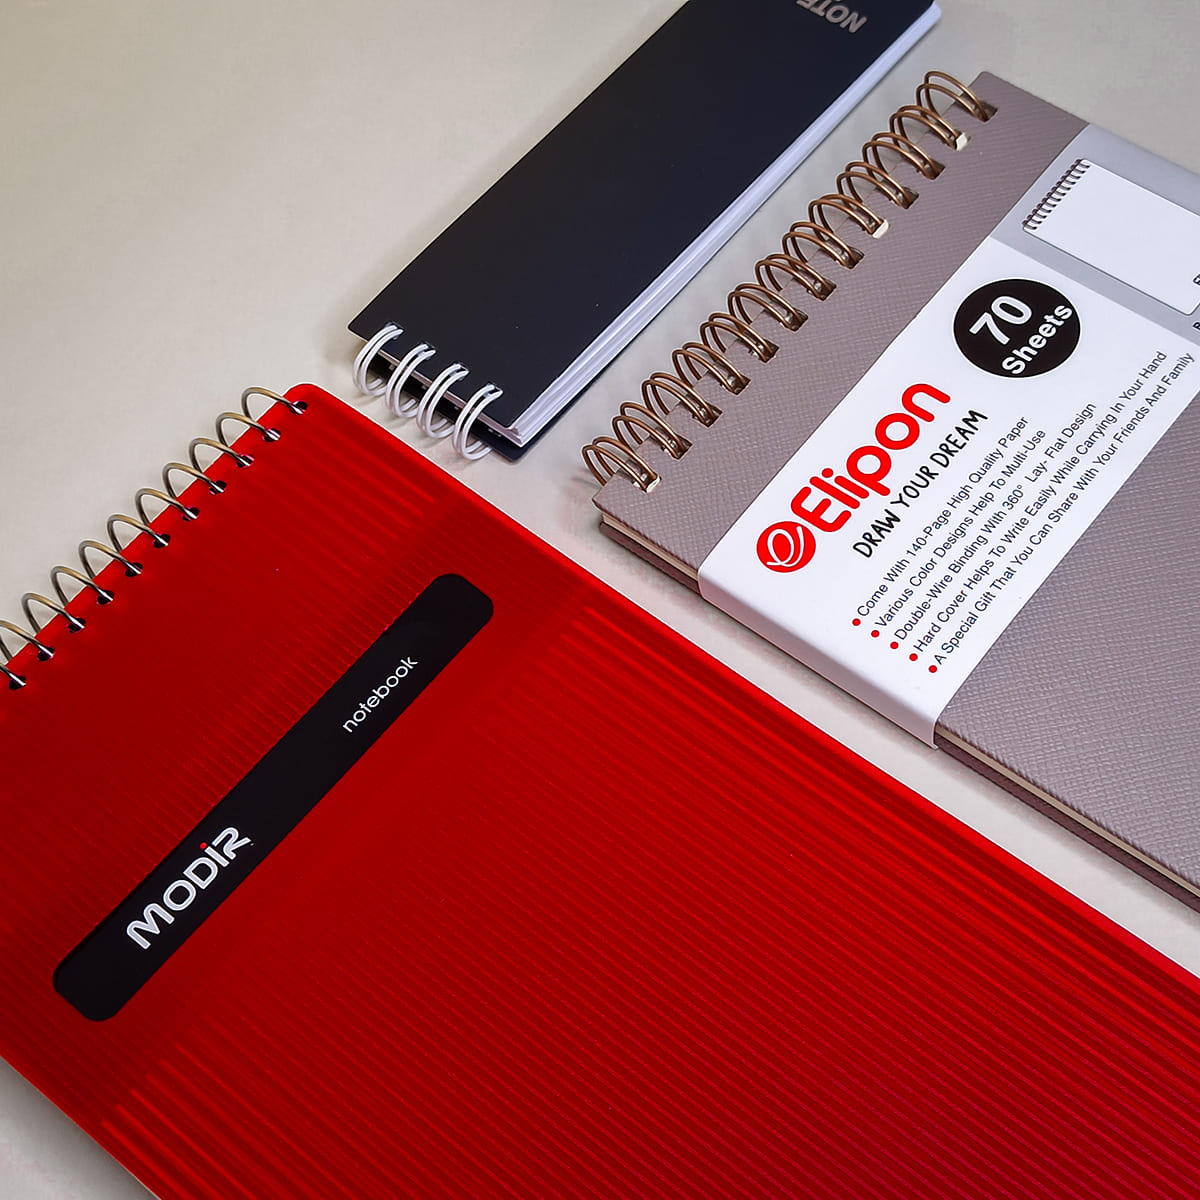 بهترین دفترچه ها برای یادداشت برداری، طراحی و غیره